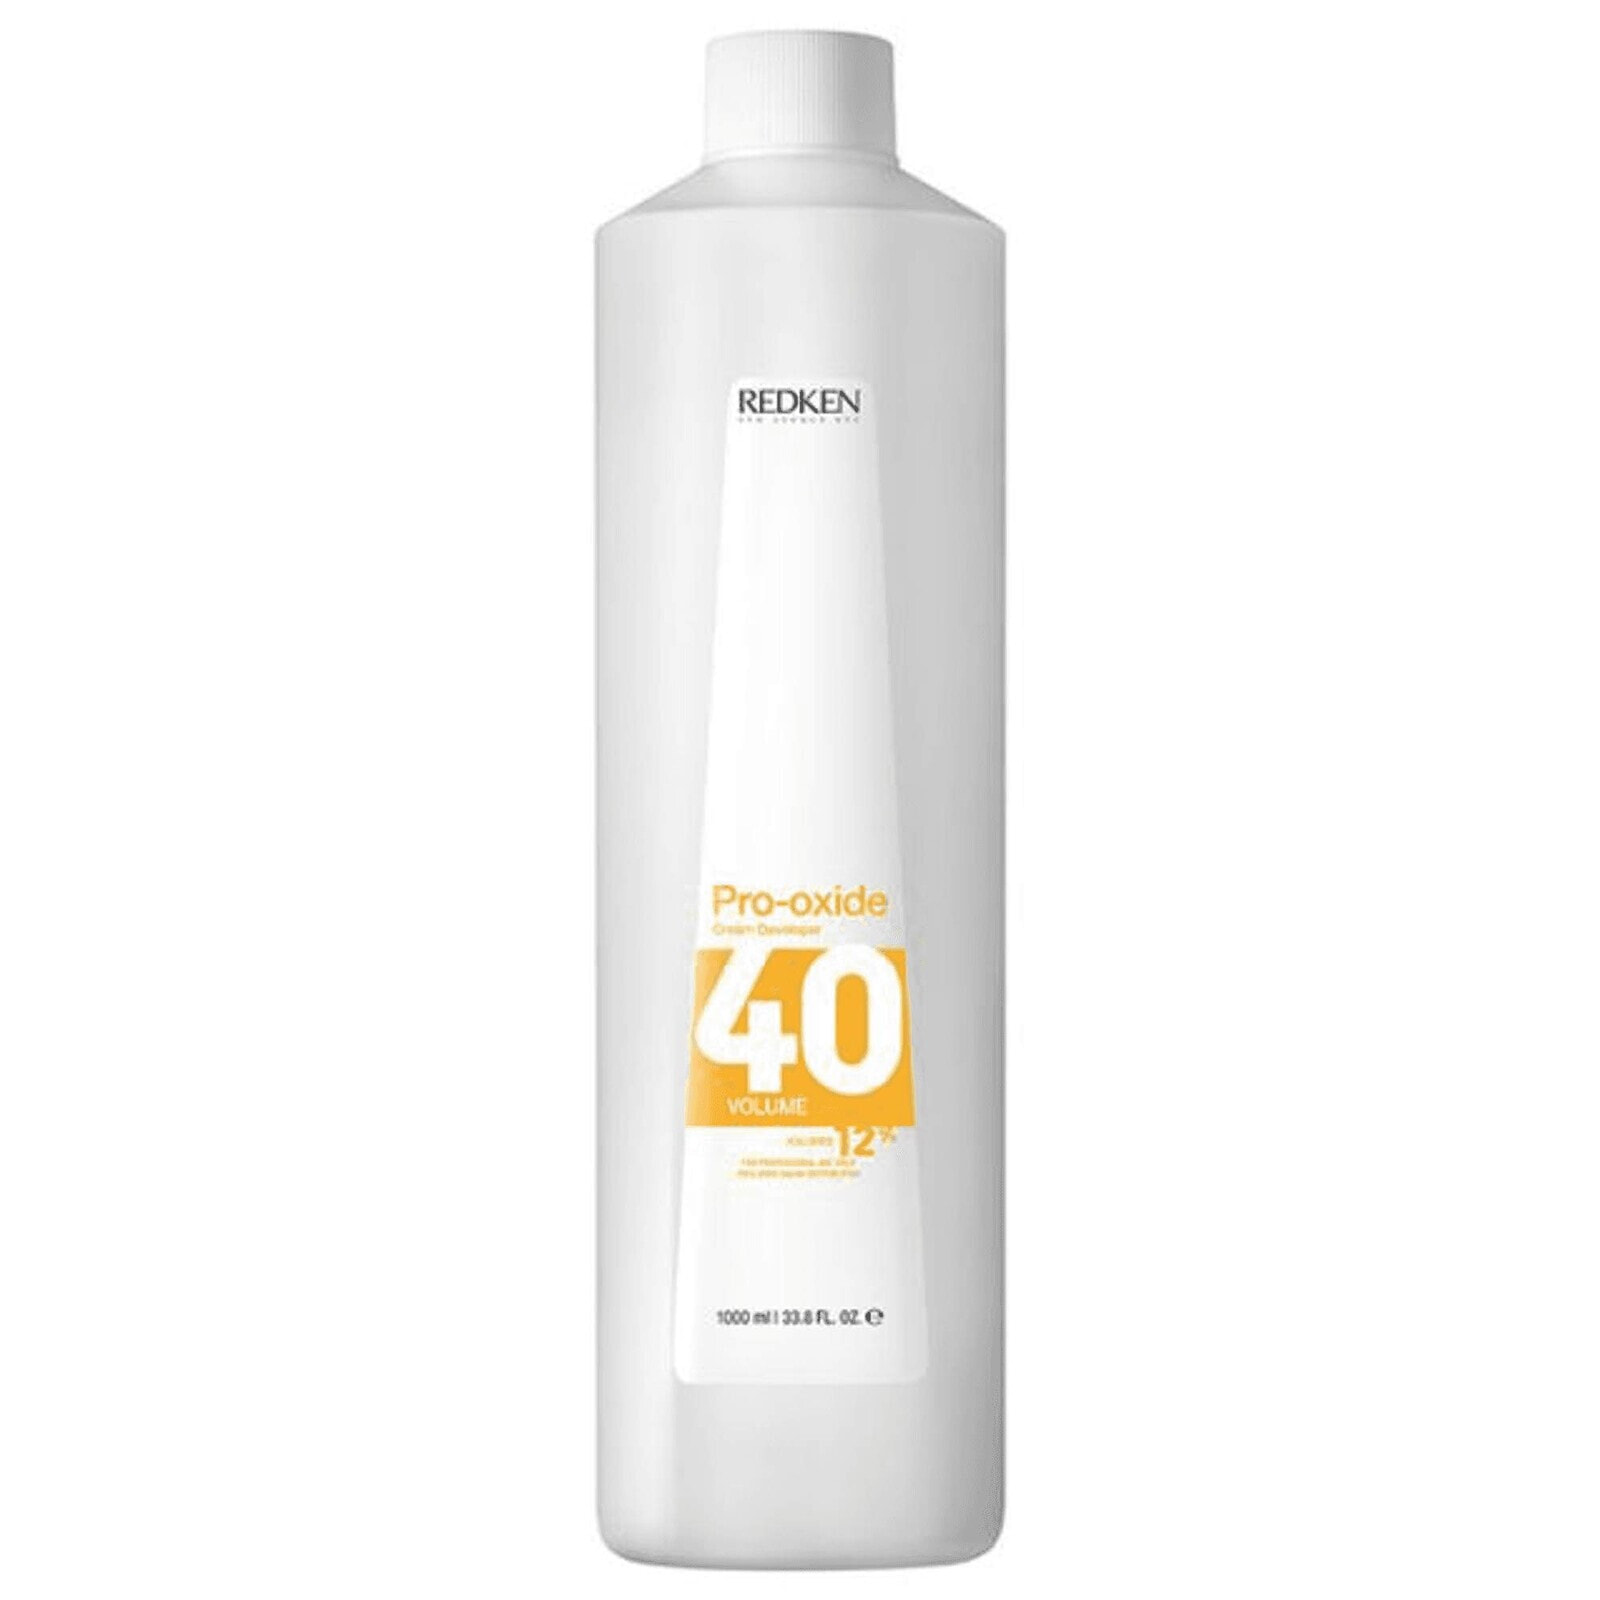 Hair Oxidizer Redken Pro-Oxide 40 vol 12 % (1000 ml)